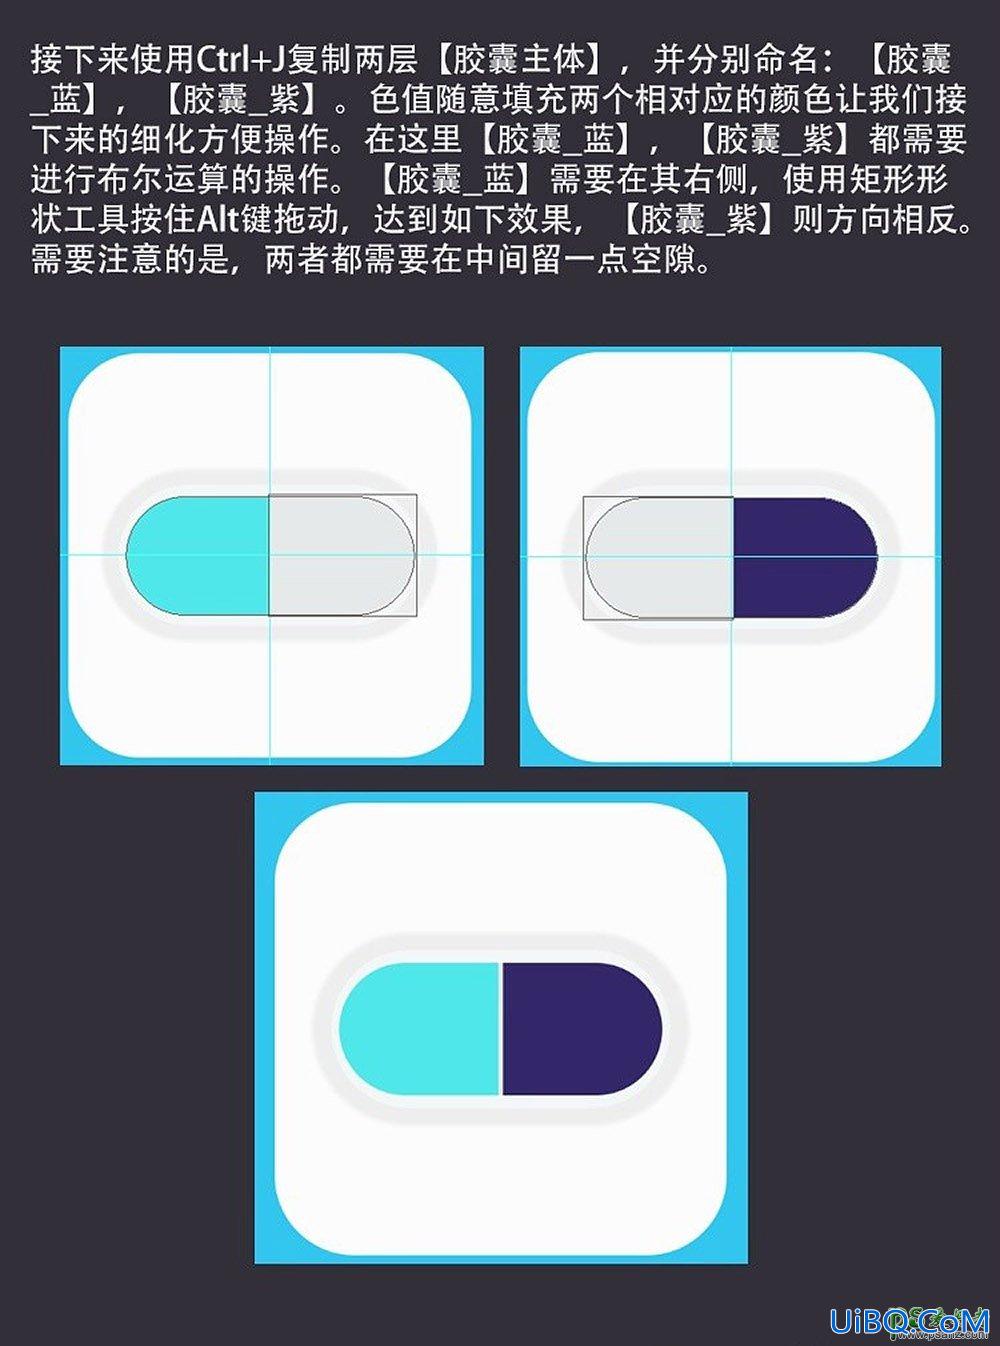 利用ps手工制作一个胶囊药物拟物图标,质感的胶囊icon图标。